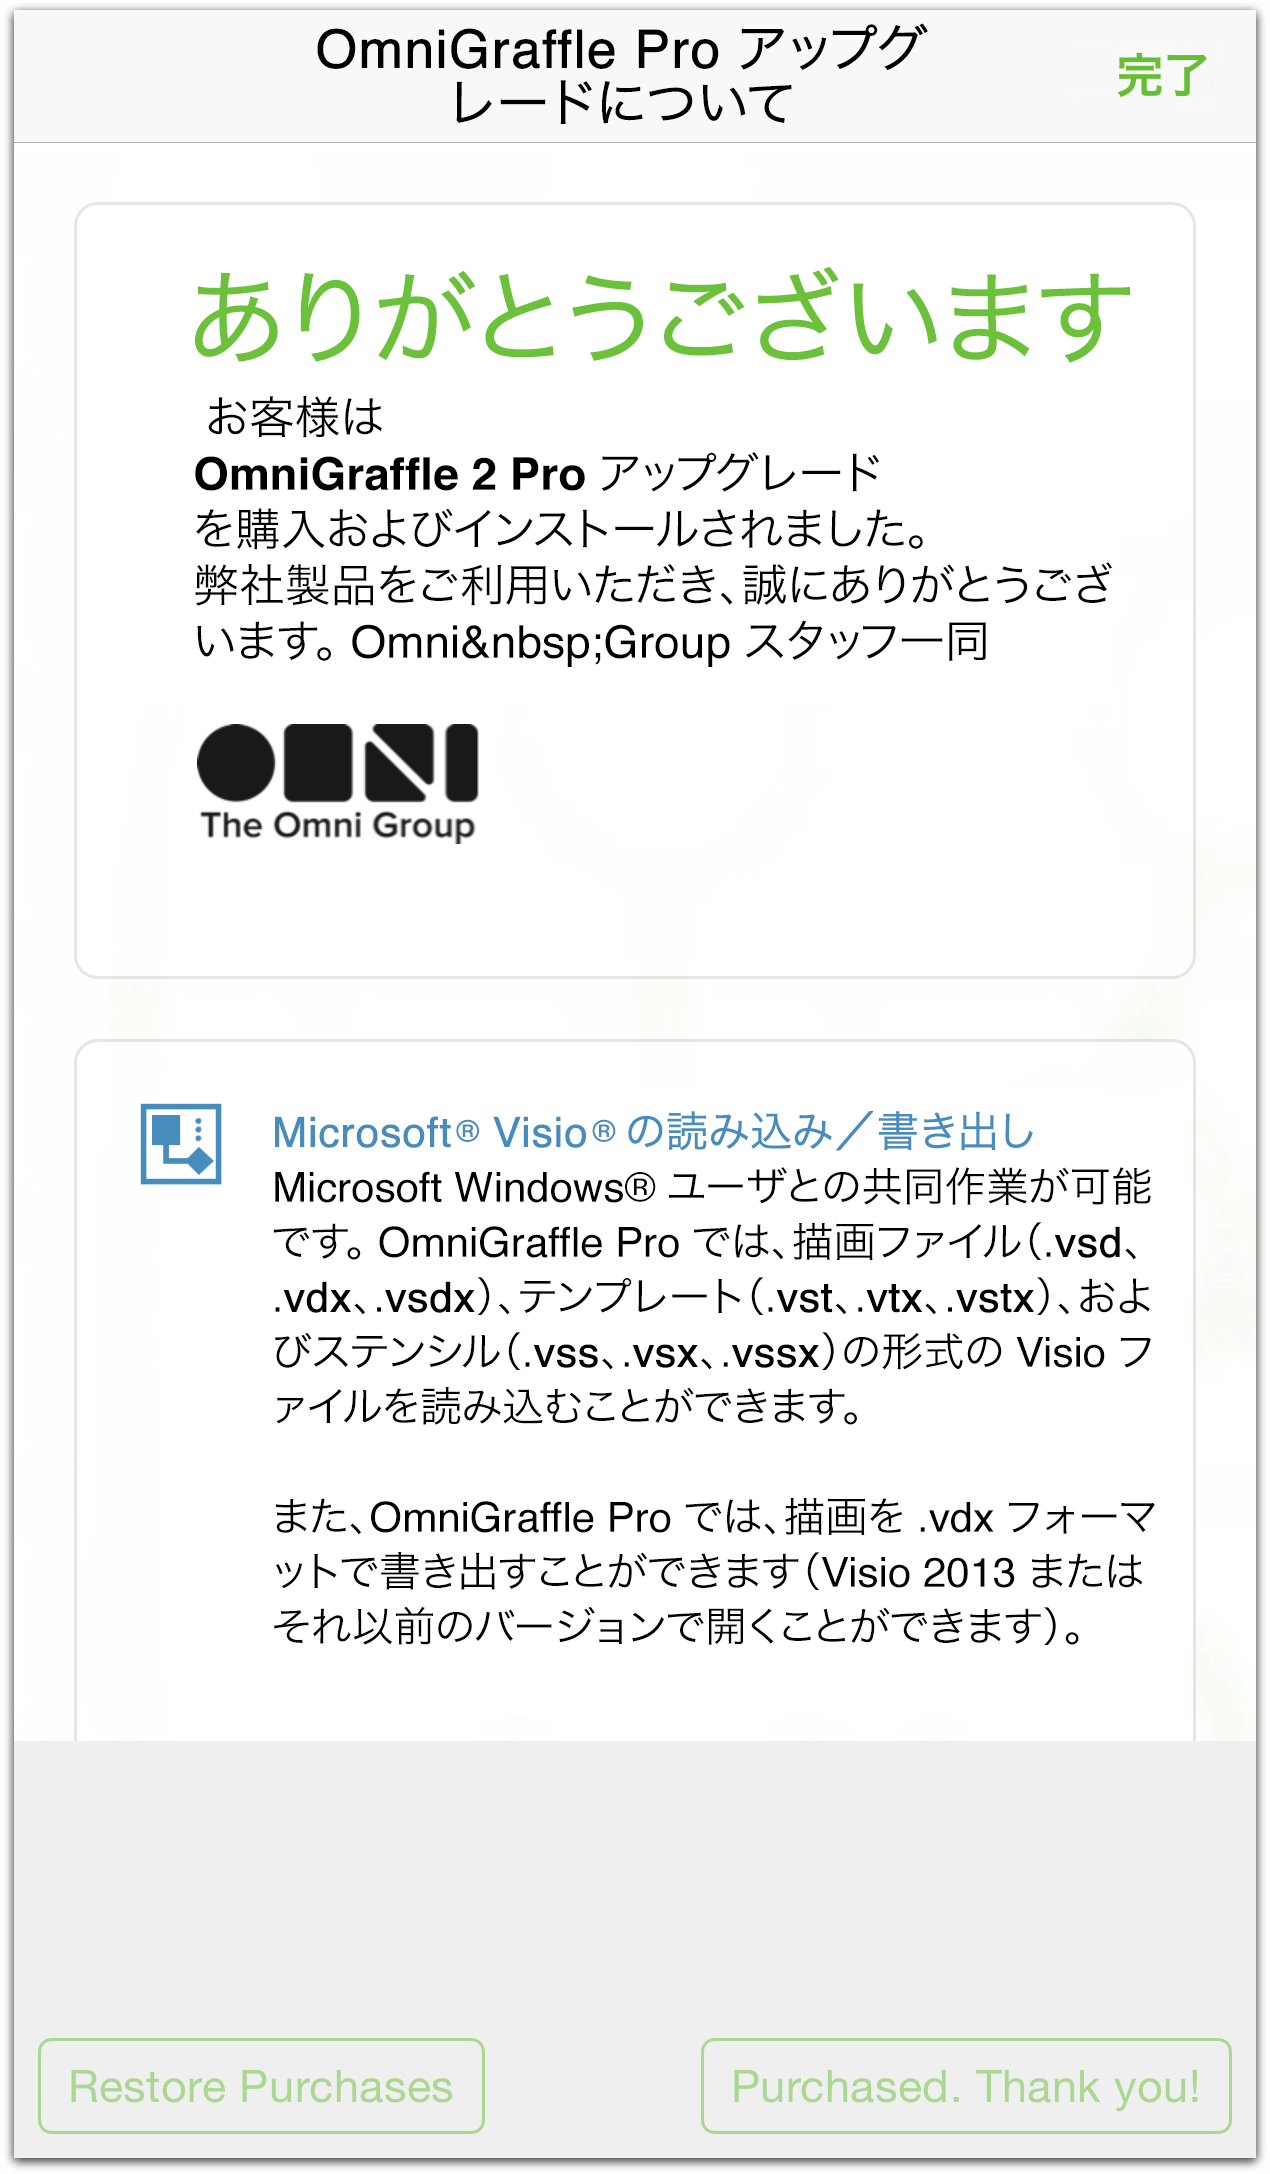 OmniGraffle 2 Pro へのアップグレードに関するお礼メッセージ